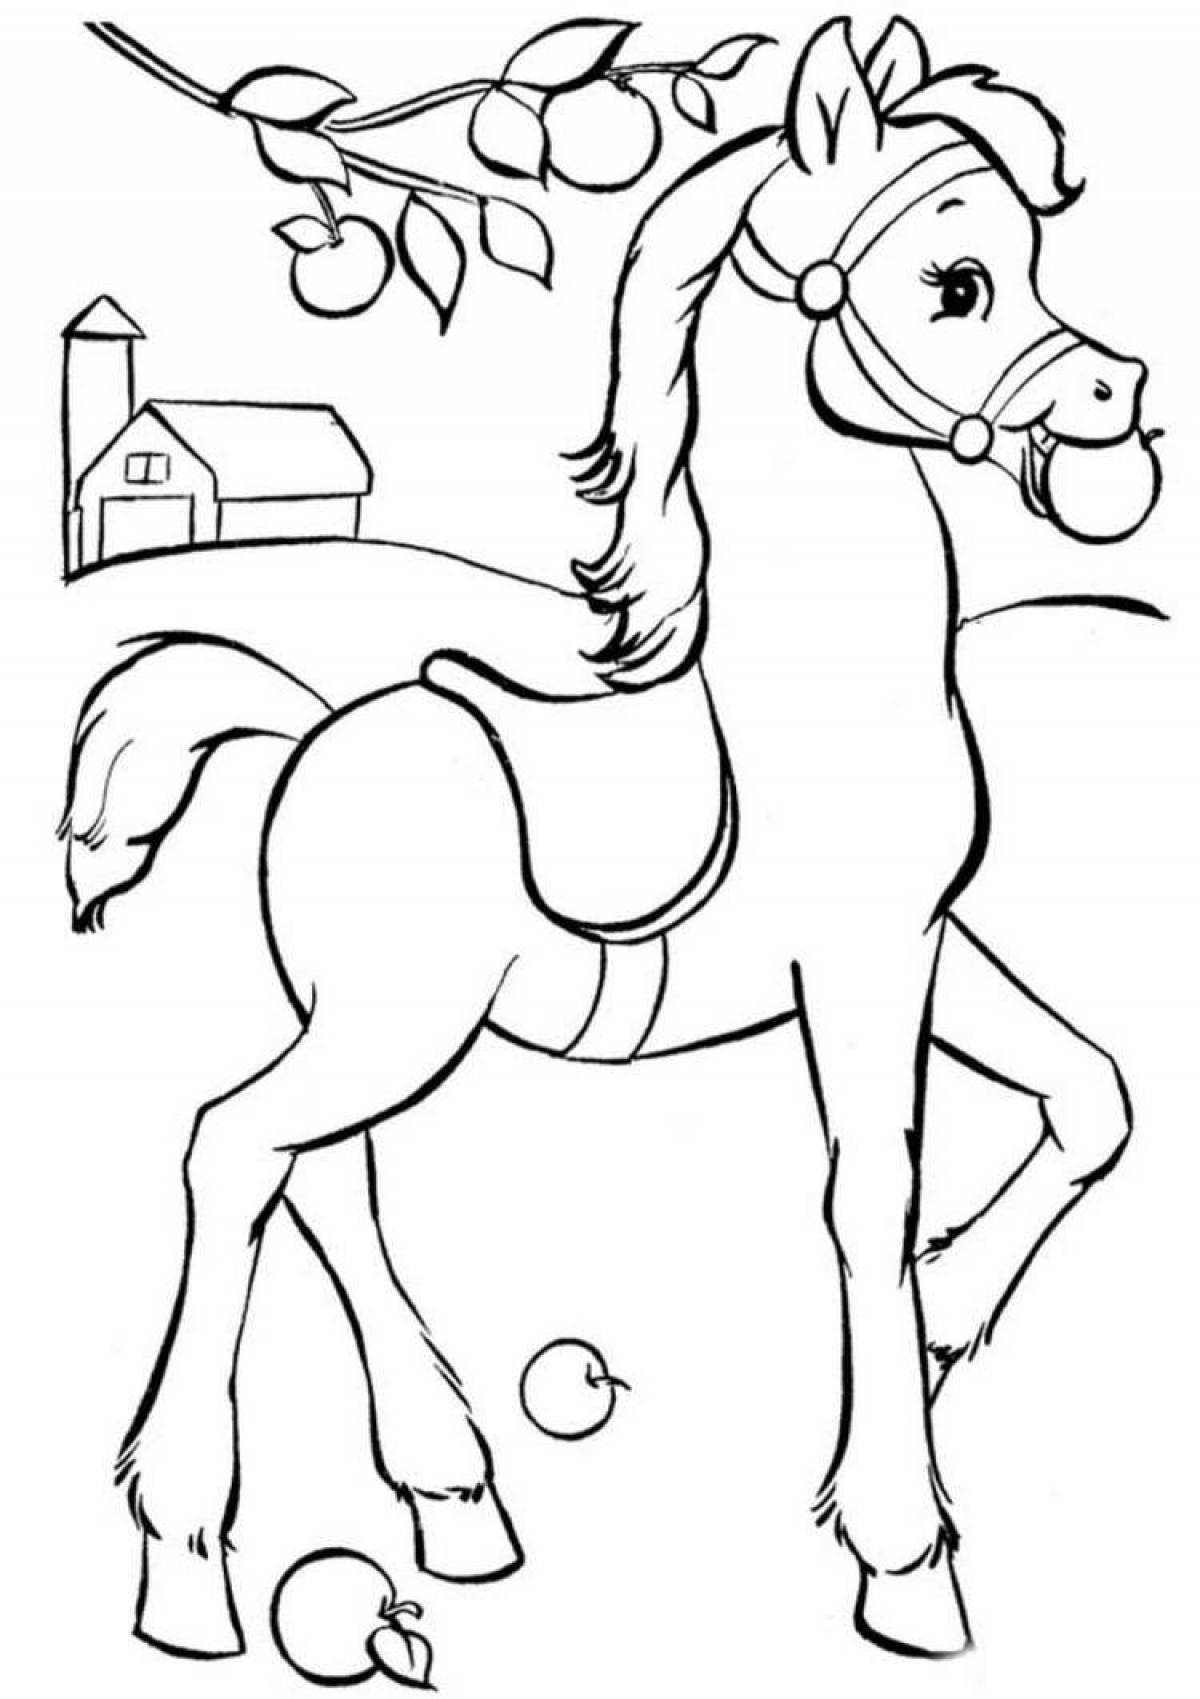 Коник печать. Раскраска. Лошадка. Лошадка раскраска для детей. Раскраска конь. Раскраски лошадки для девочек.